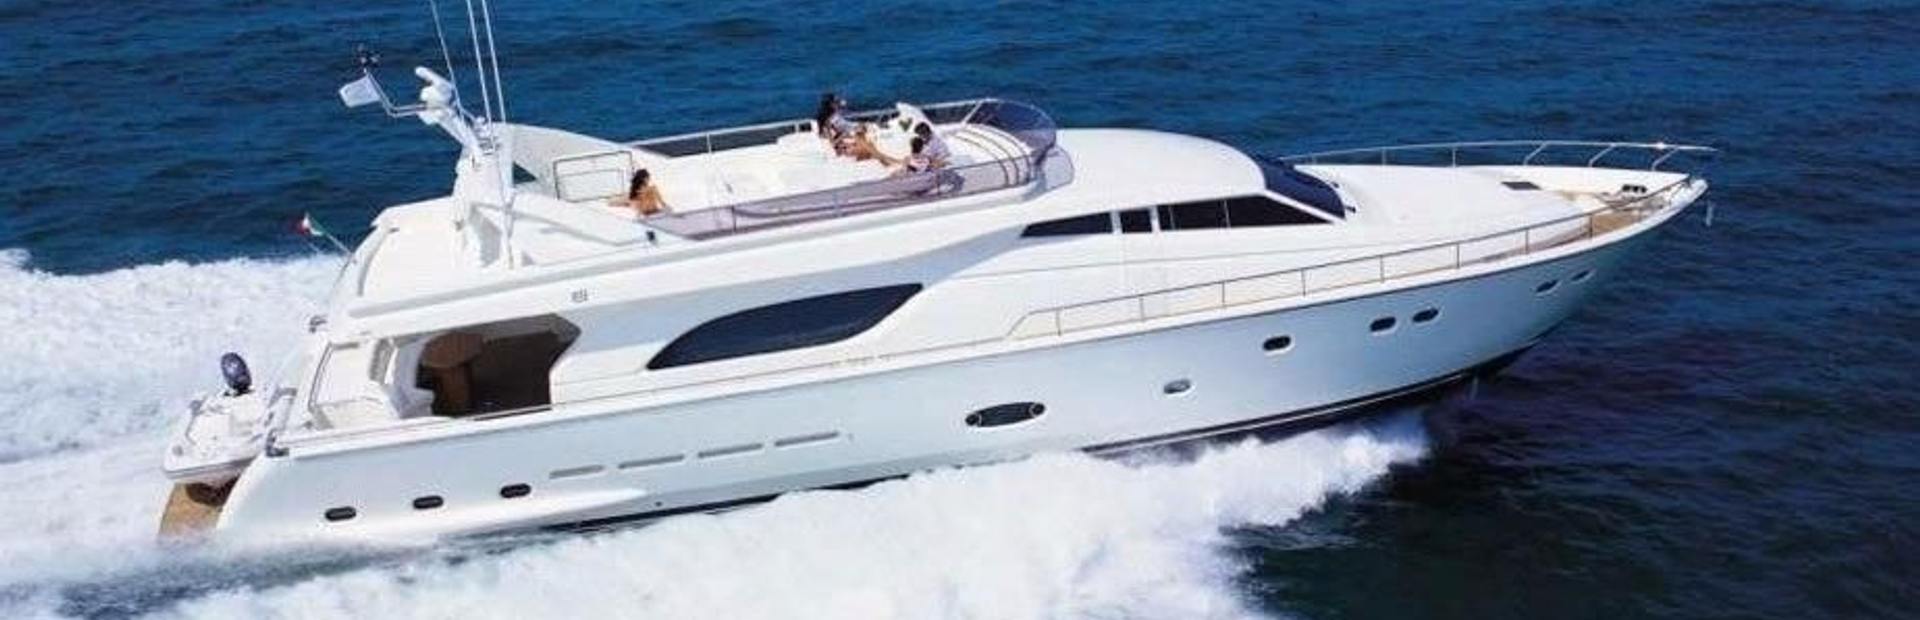 Ferretti 810 Yacht